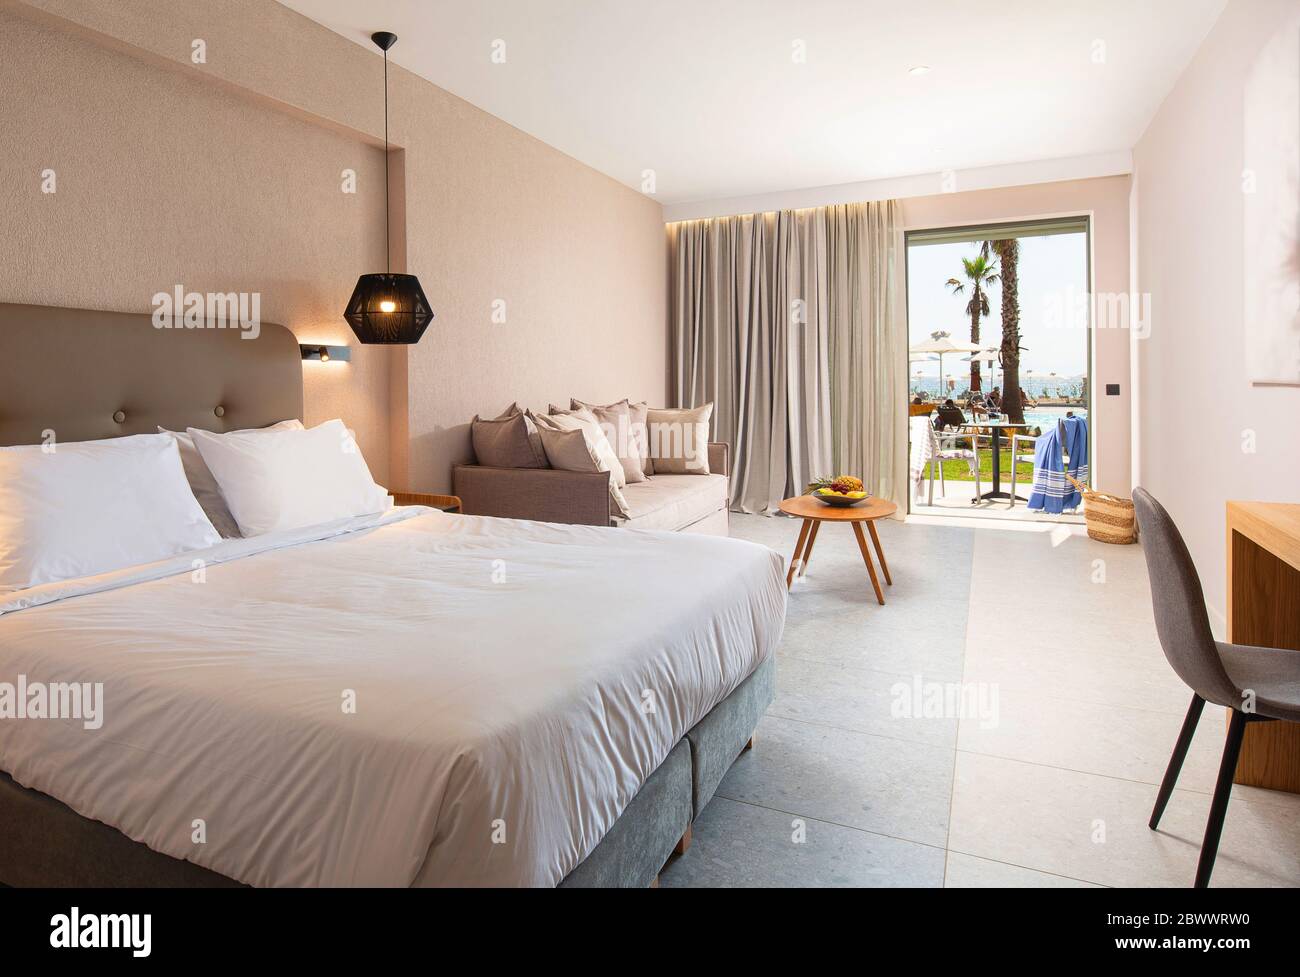 Interni dal design moderno della camera da letto dell'hotel con delicati arredi in tessuto e terrazza aperta con piscina tropicale Foto Stock